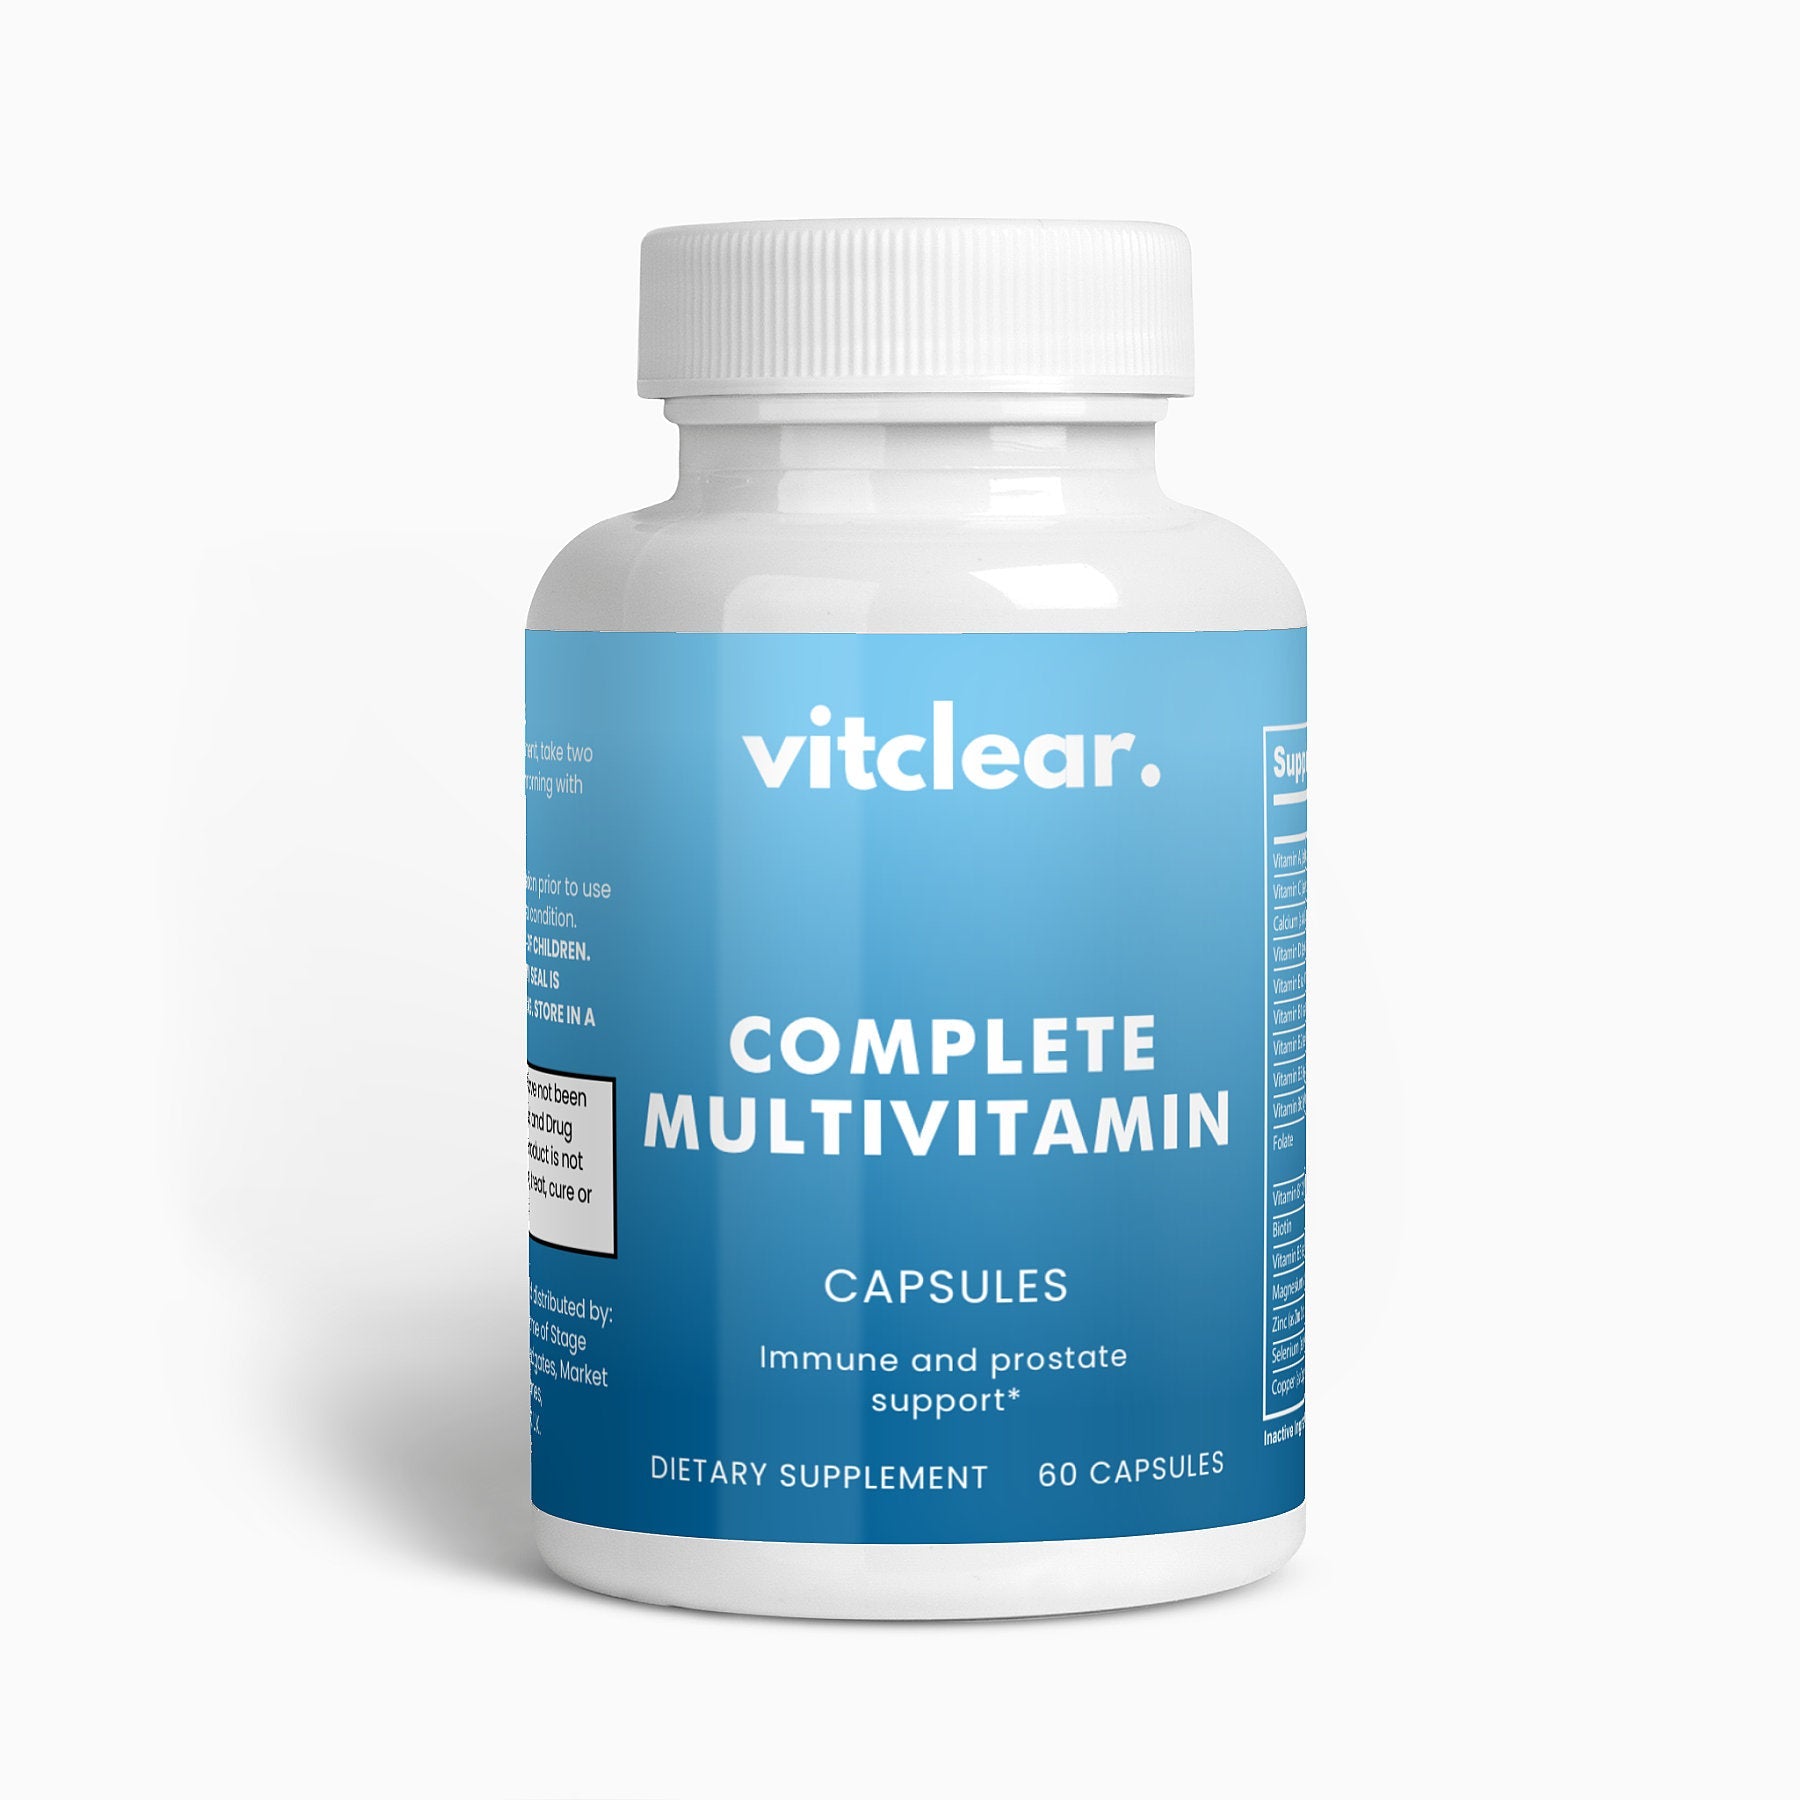 Complete Multivitamin - Vitclear.